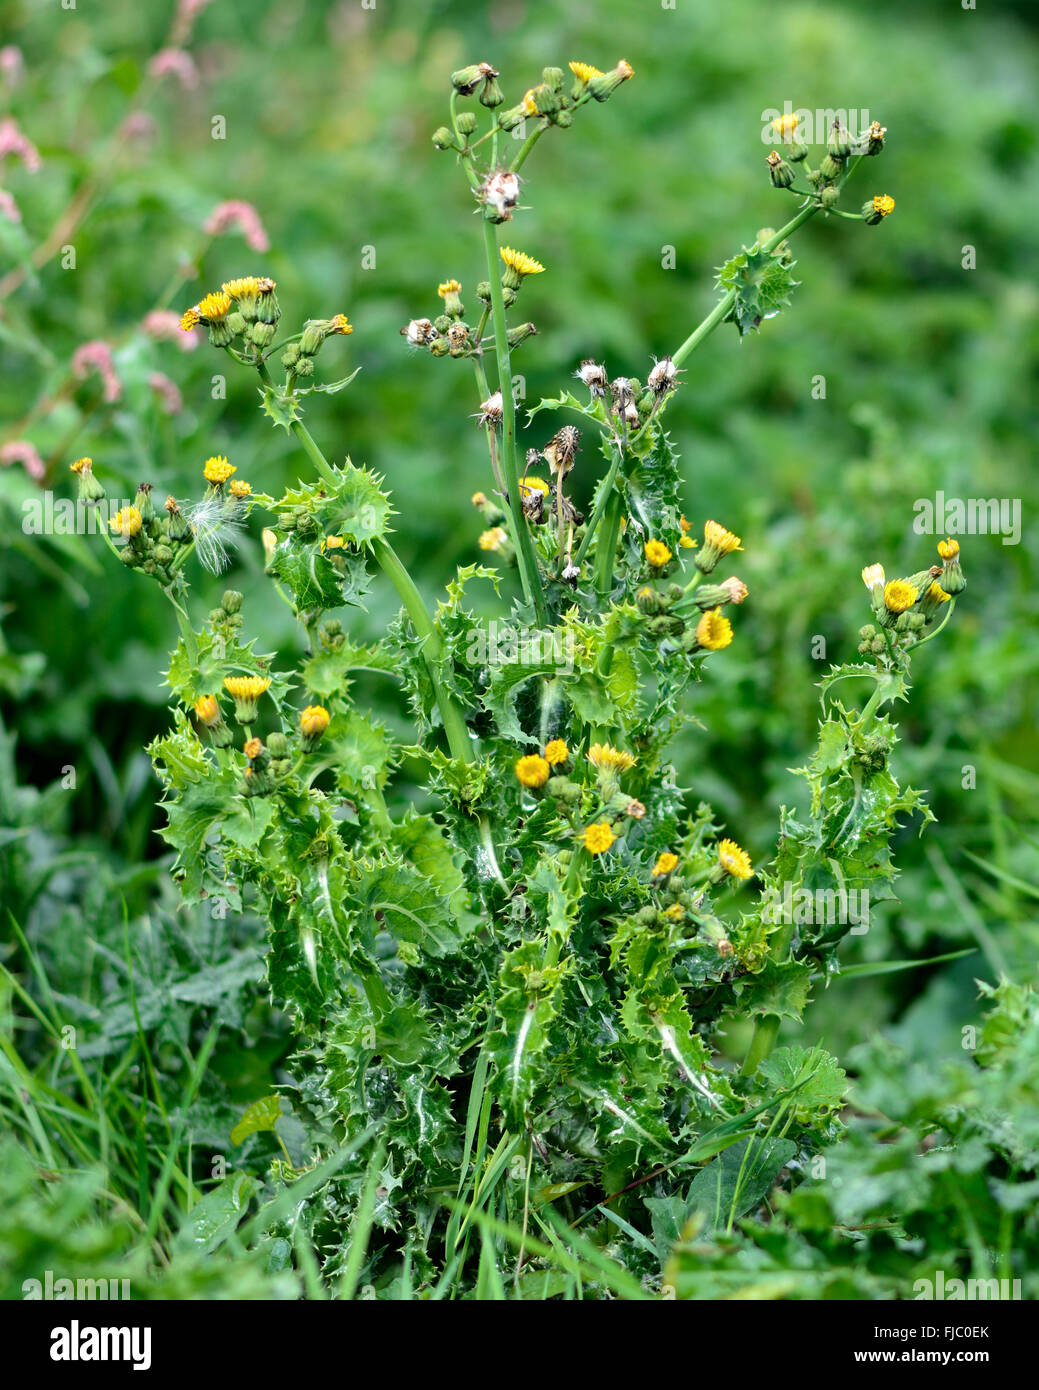 Stachelige Sau-Distel (Sonchus Asper). Stachelige Pflanze in der Familie  der Korbblütler (Asteraceae), mit gelben Blüten und stacheligen Blättern  Stockfotografie - Alamy